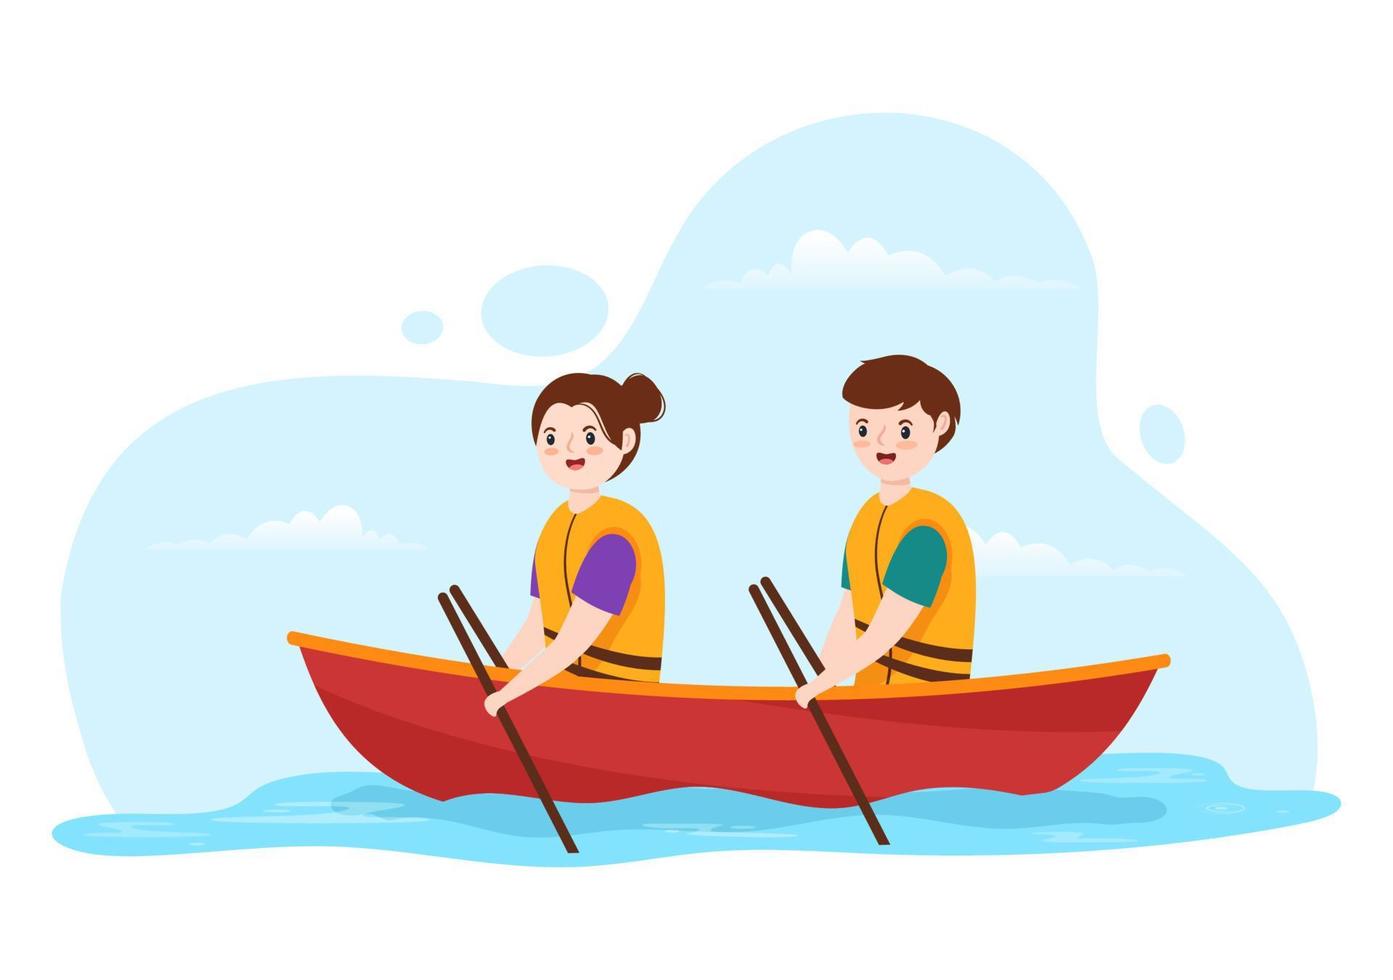 gente disfrutando de la ilustración de remo con canoa y navegando en un río o lago en una plantilla dibujada a mano de dibujos animados planos de deportes acuáticos activos vector